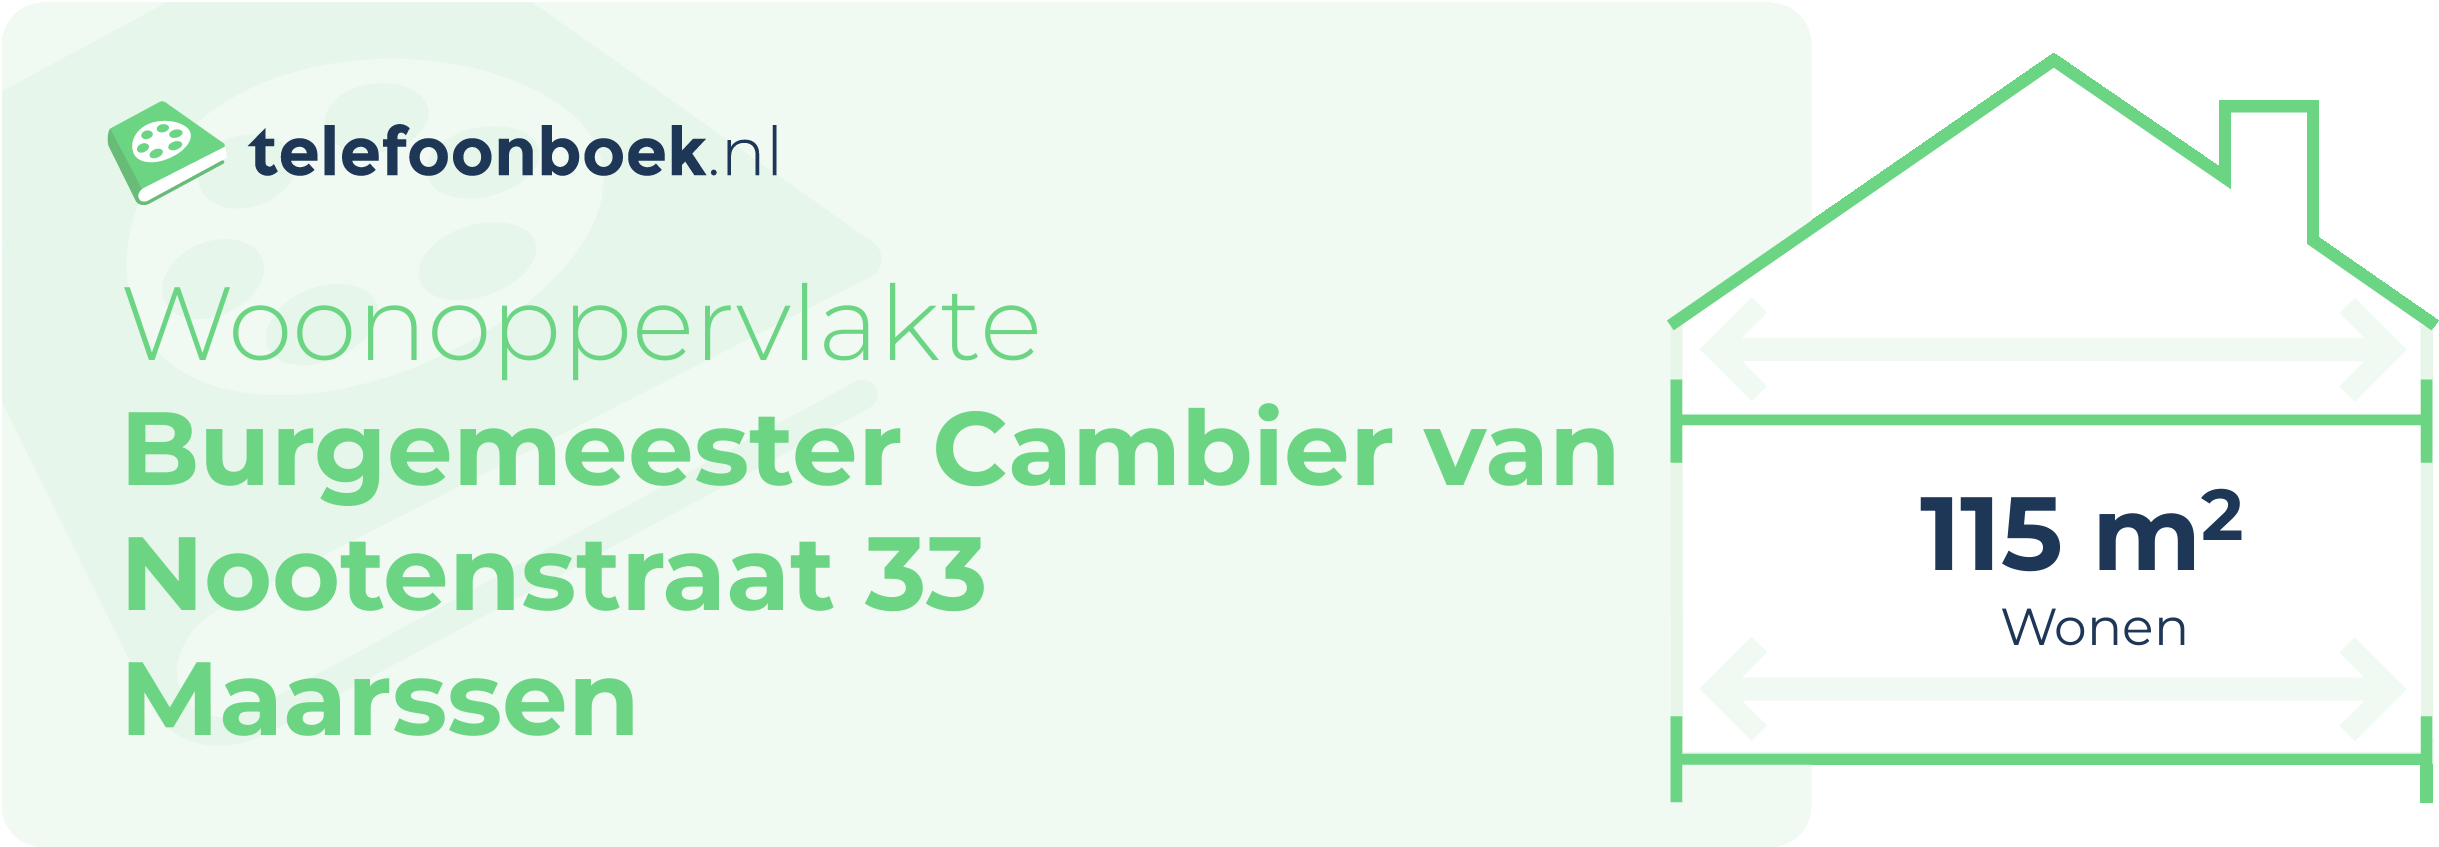 Woonoppervlakte Burgemeester Cambier Van Nootenstraat 33 Maarssen